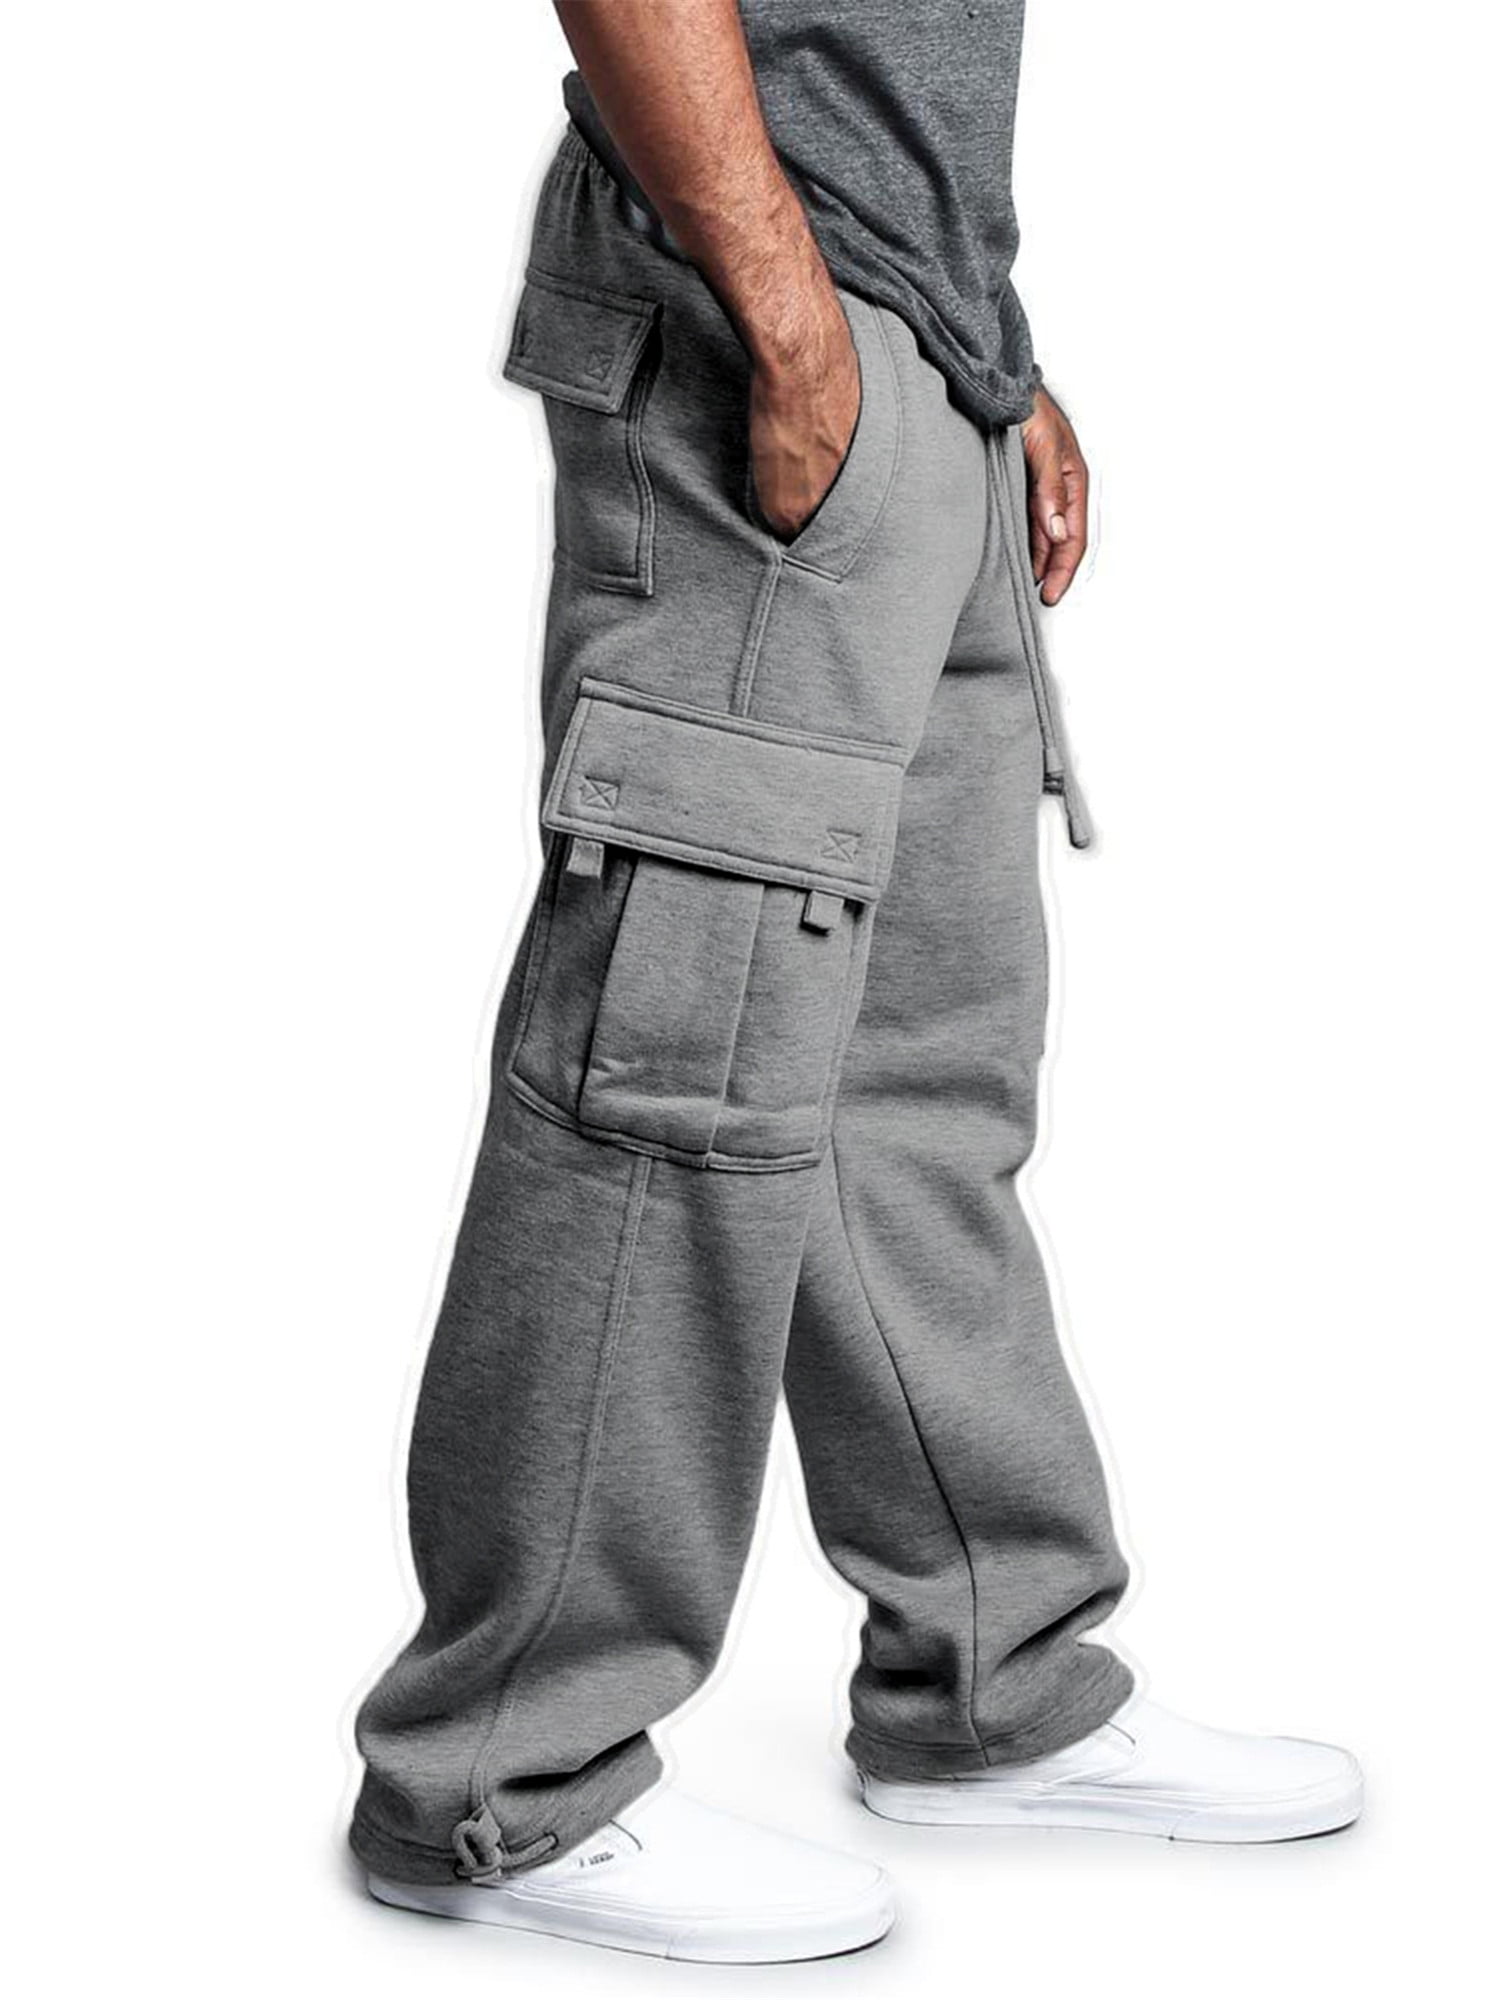 Aunavey Men's Fleece Cargo Sweatpants Solid Heavyweight Casual Pants